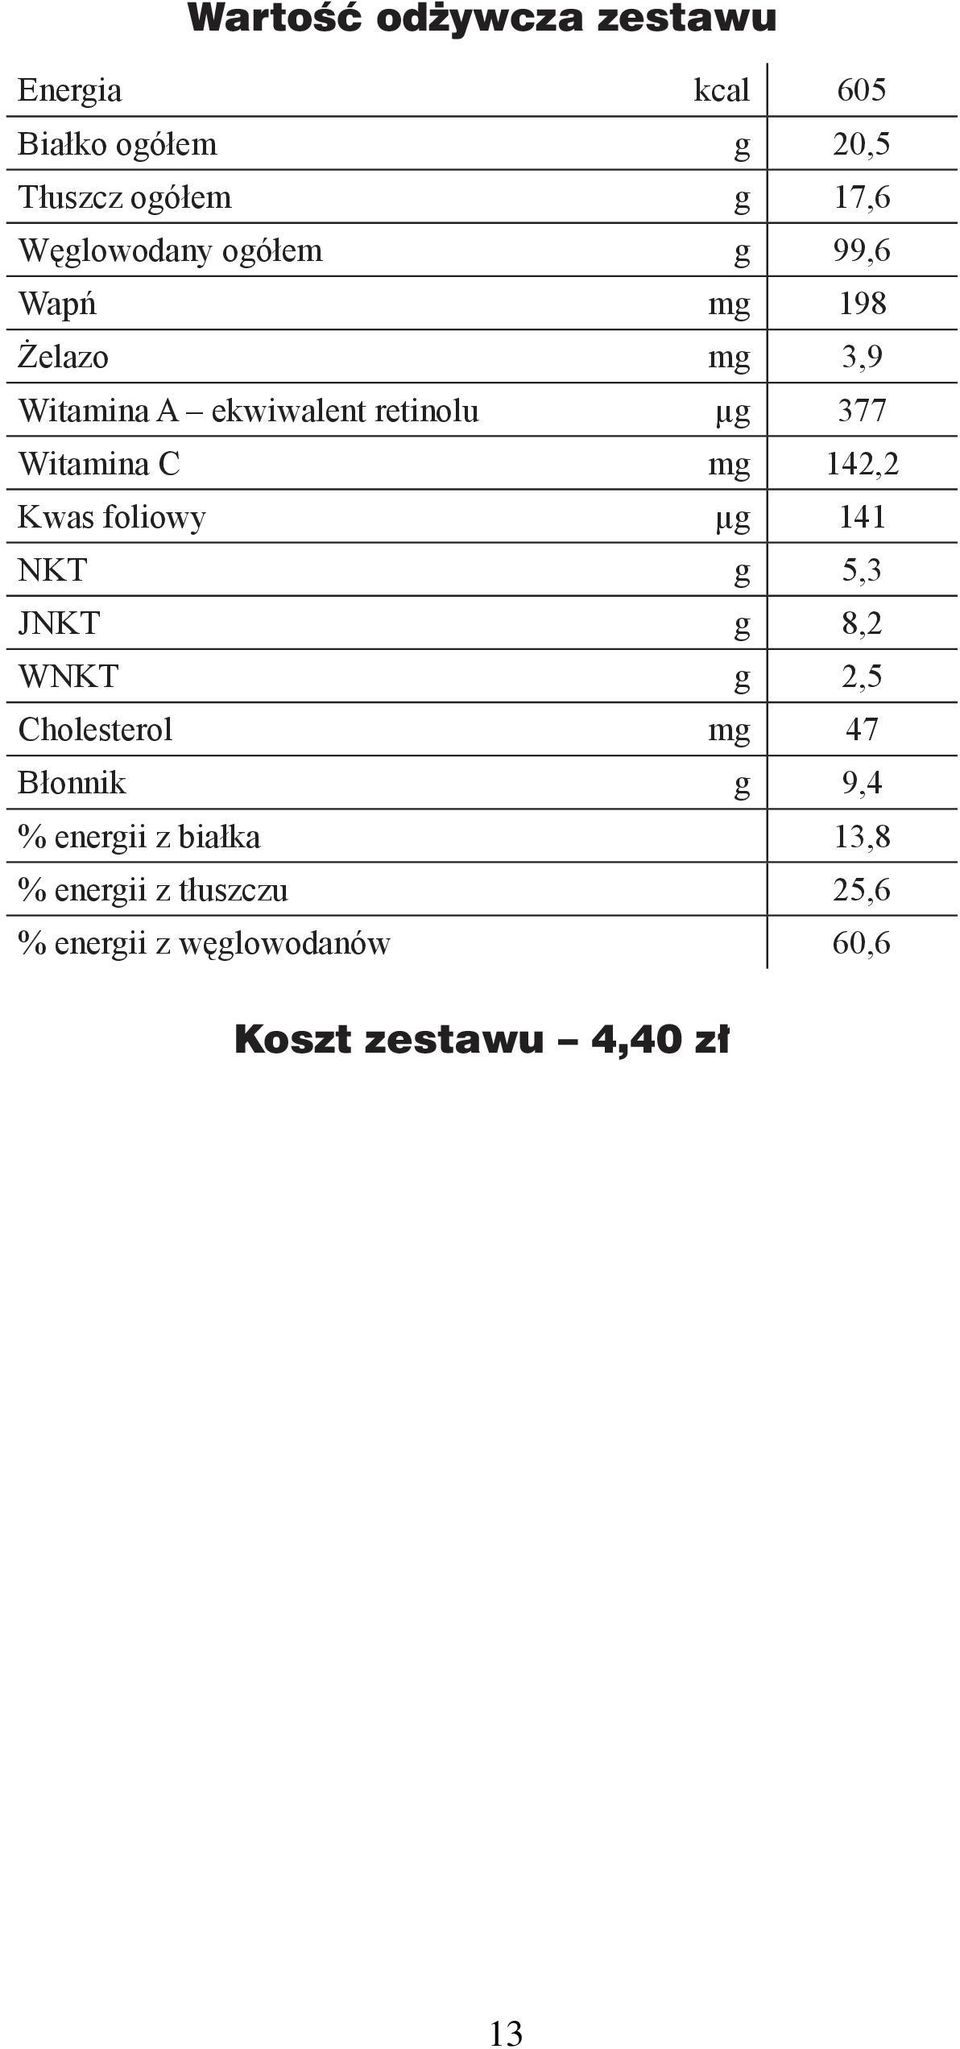 142,2 Kwas foliowy µ 141 NKT 5,3 JNKT 8,2 WNKT 2,5 Cholesterol m 47 Błonnik 9,4 % enerii